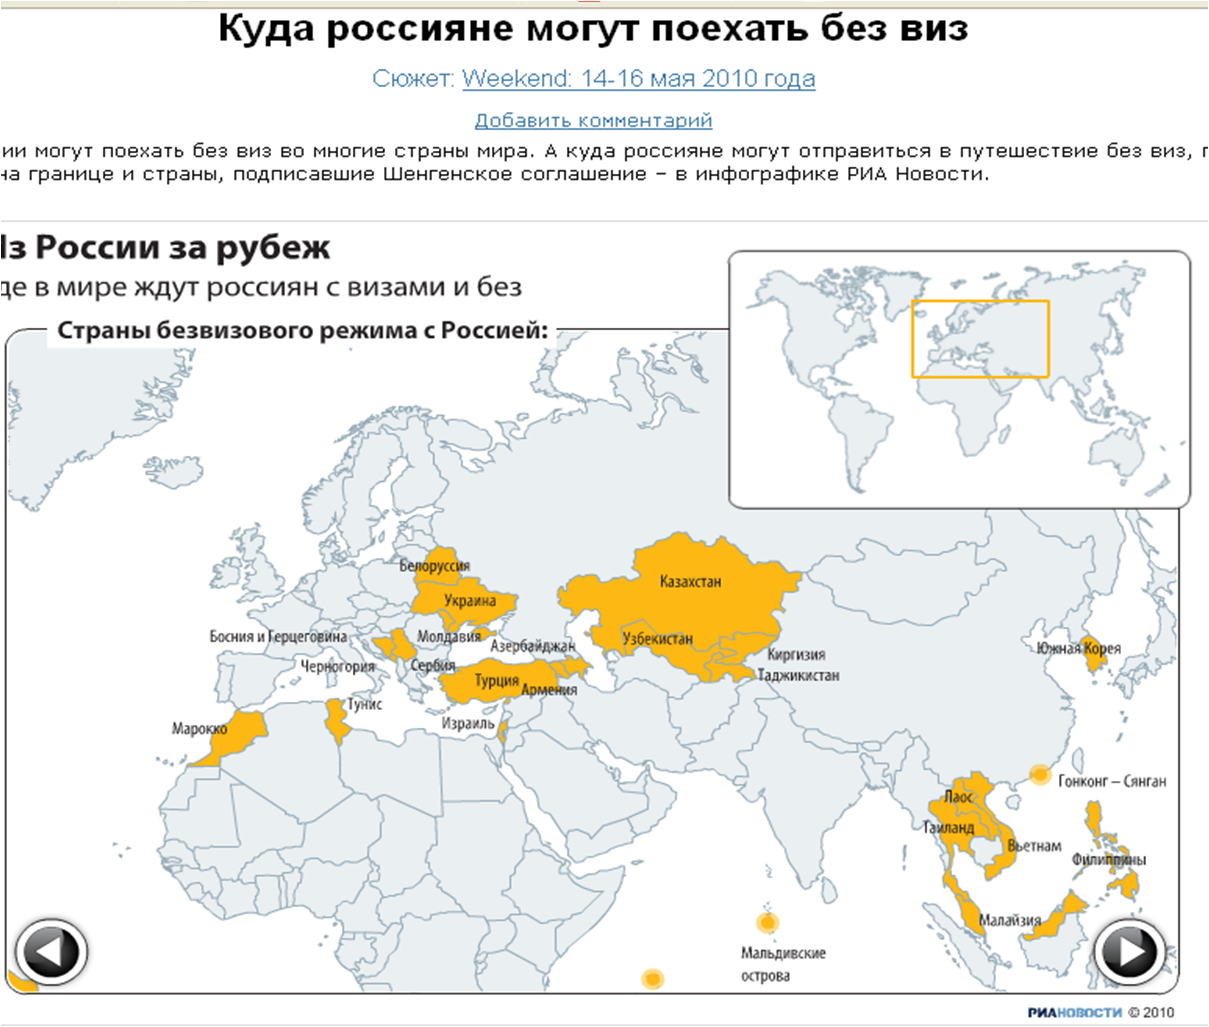 Страны без визы для России. Безвизовые страны для России. Куда россияне могут поехать без визы. Карта стран куда можно поехать россиянам.